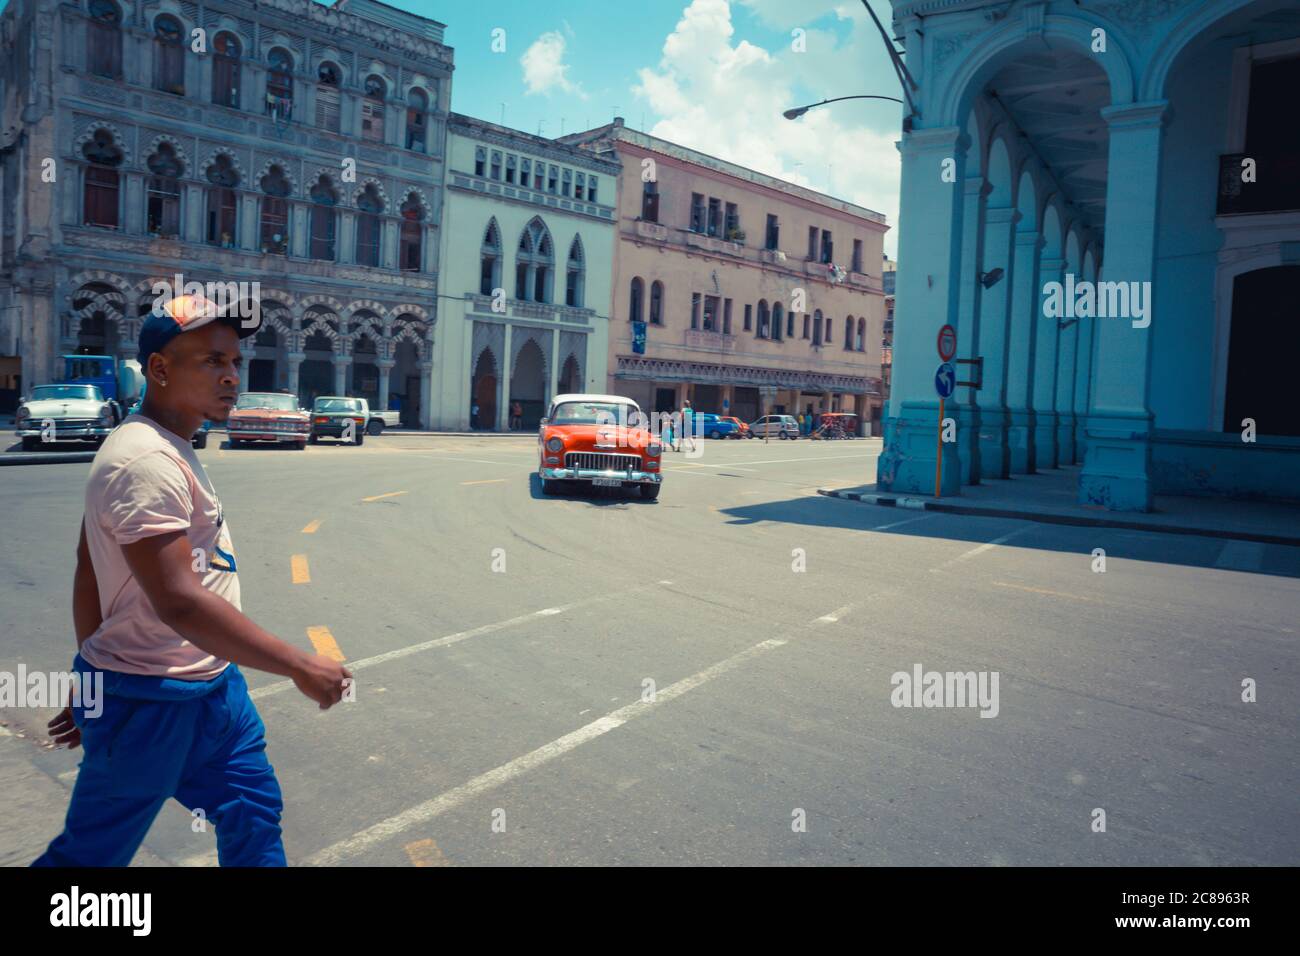 Havanna / Kuba - 04.15.2015: Kubaner mit Sportkleidung und Hut, der als roter Klassiker (Oldtimer) die Straße überquert, Havanna, Kuba Stockfoto